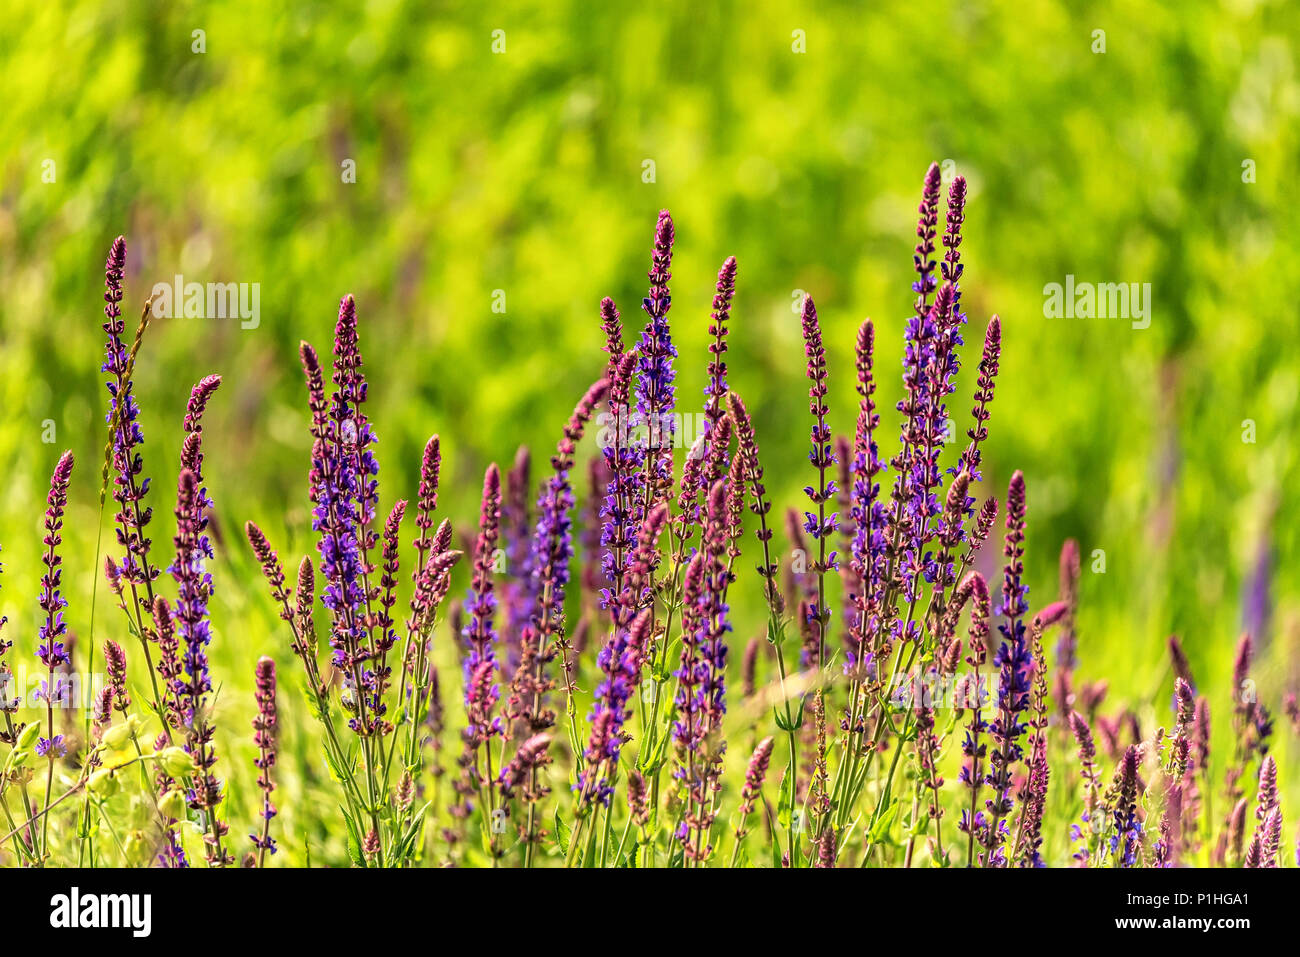 Fresh purple flowers of sage or Salvia divinorum Stock Photo